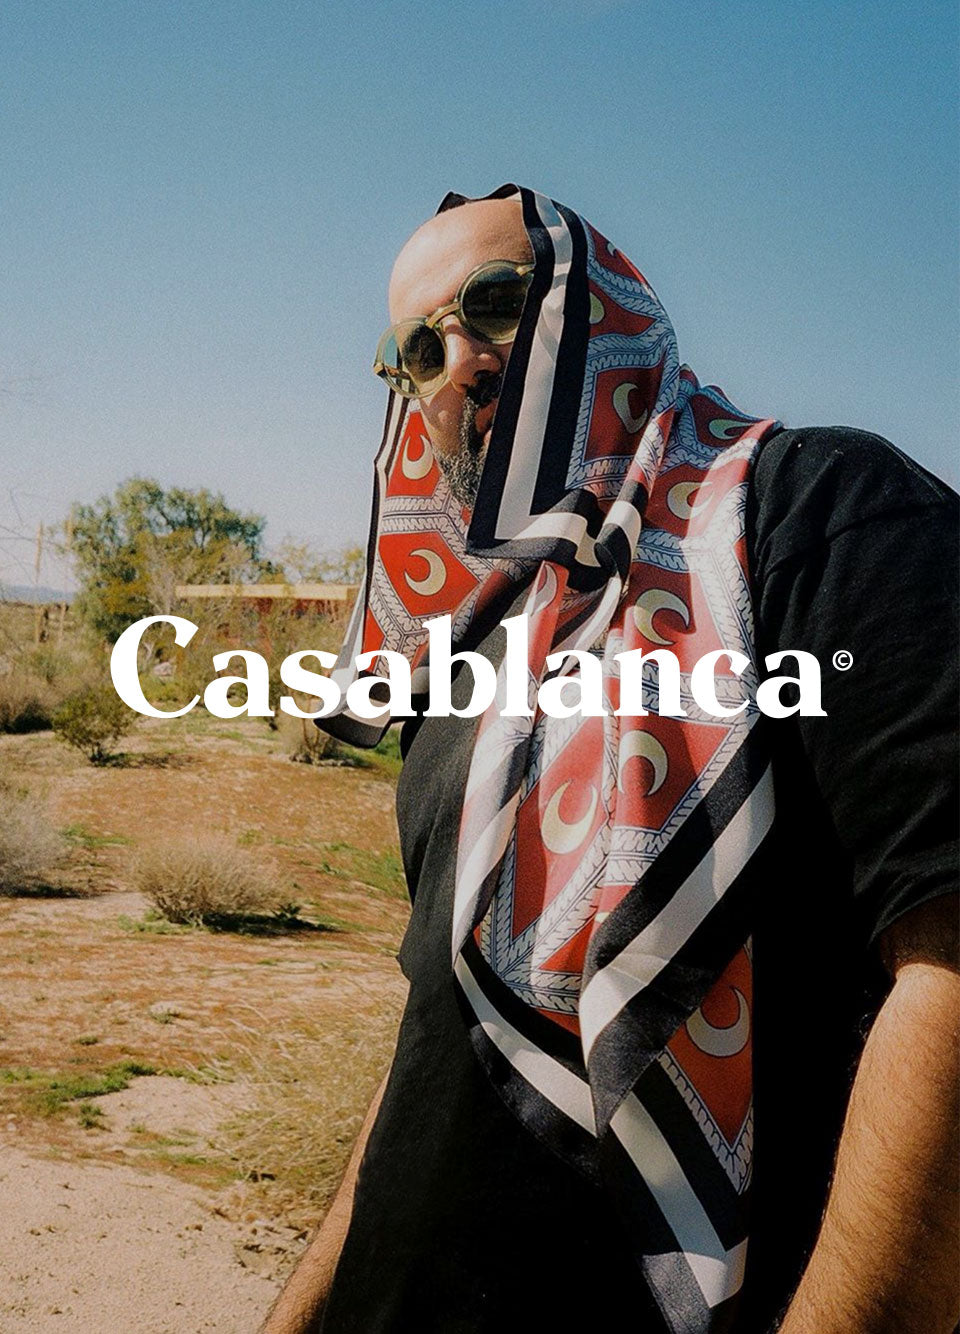 Brand in Focus: Casablanca